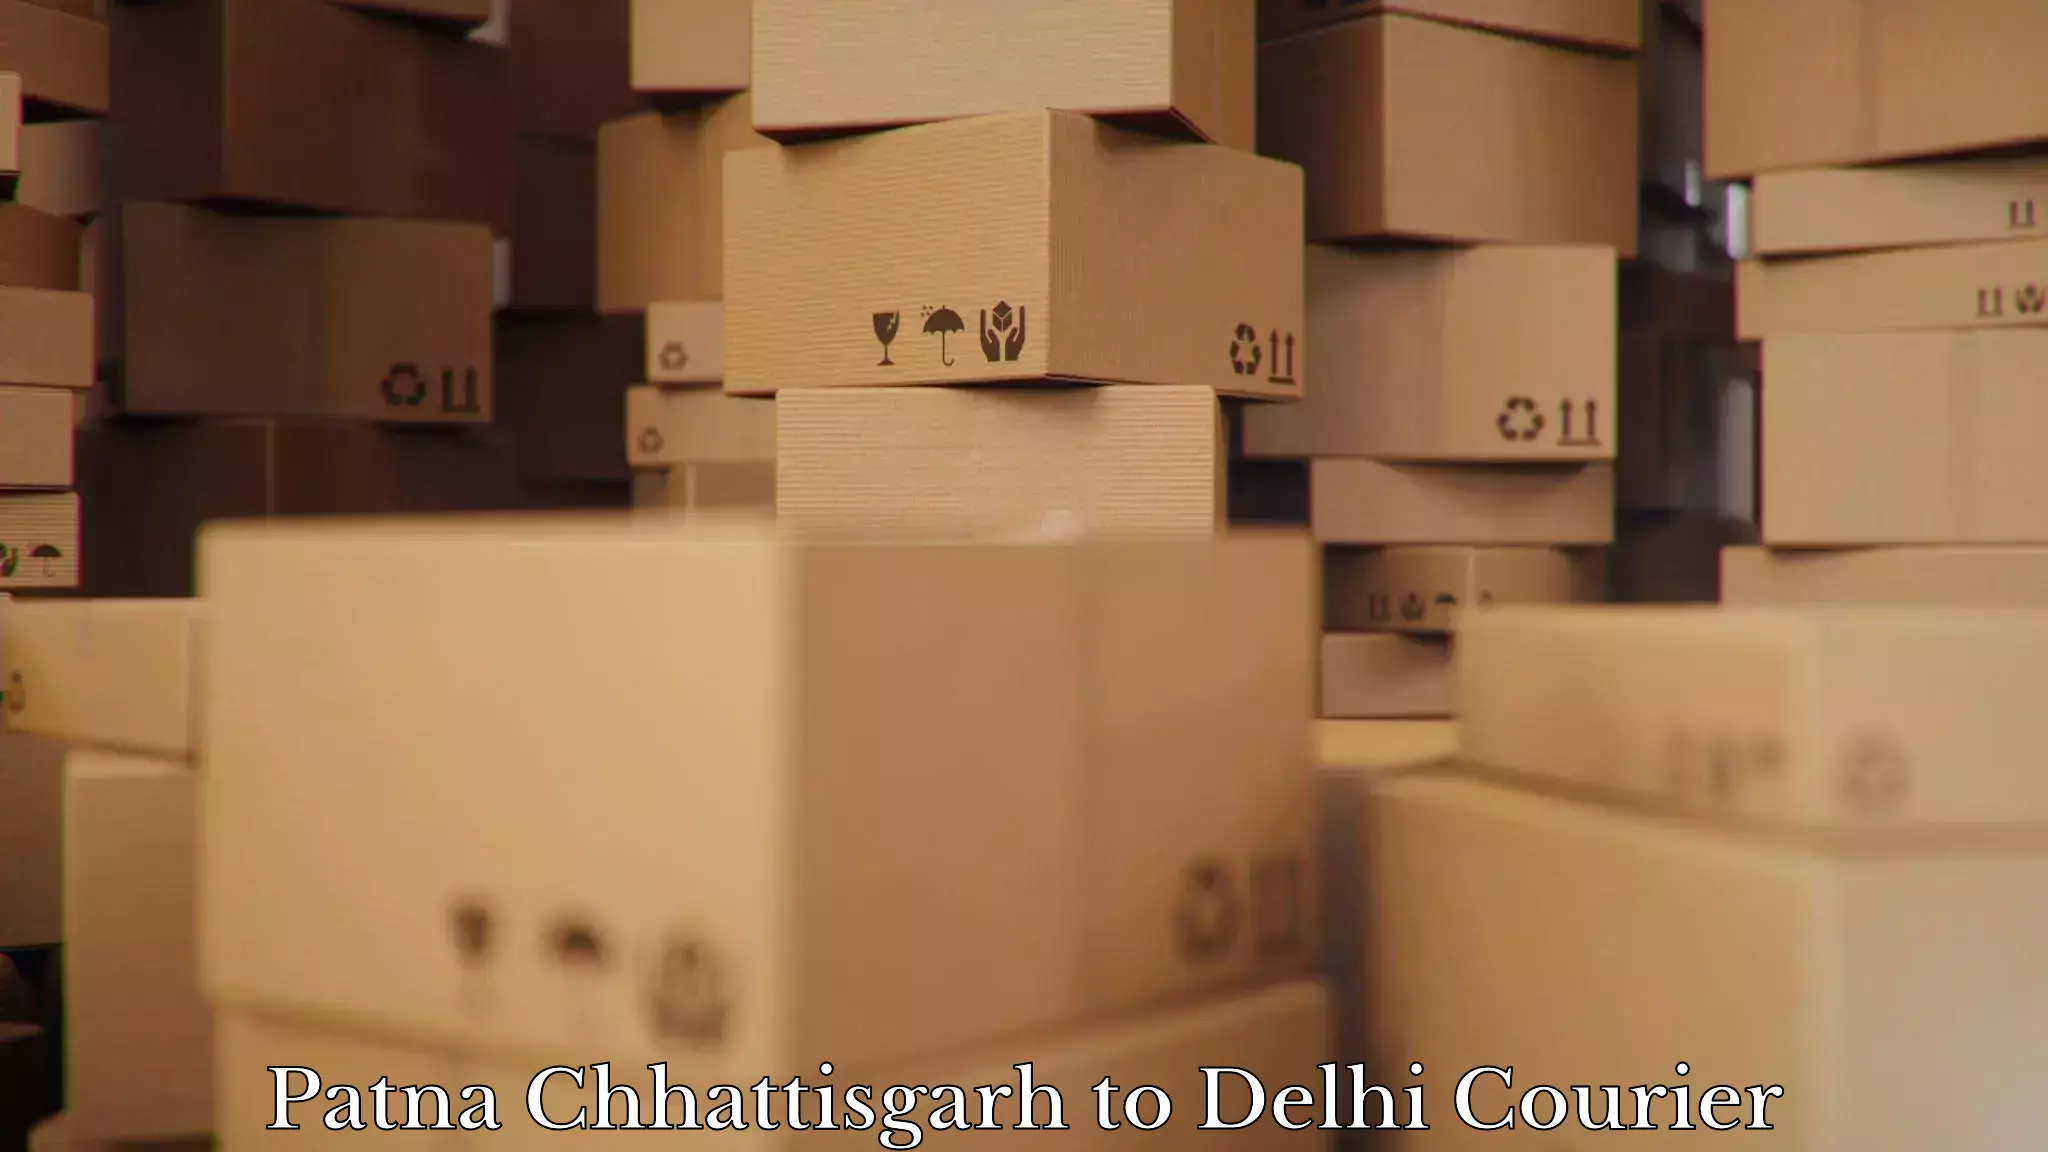 Personalized moving service in Patna Chhattisgarh to IIT Delhi